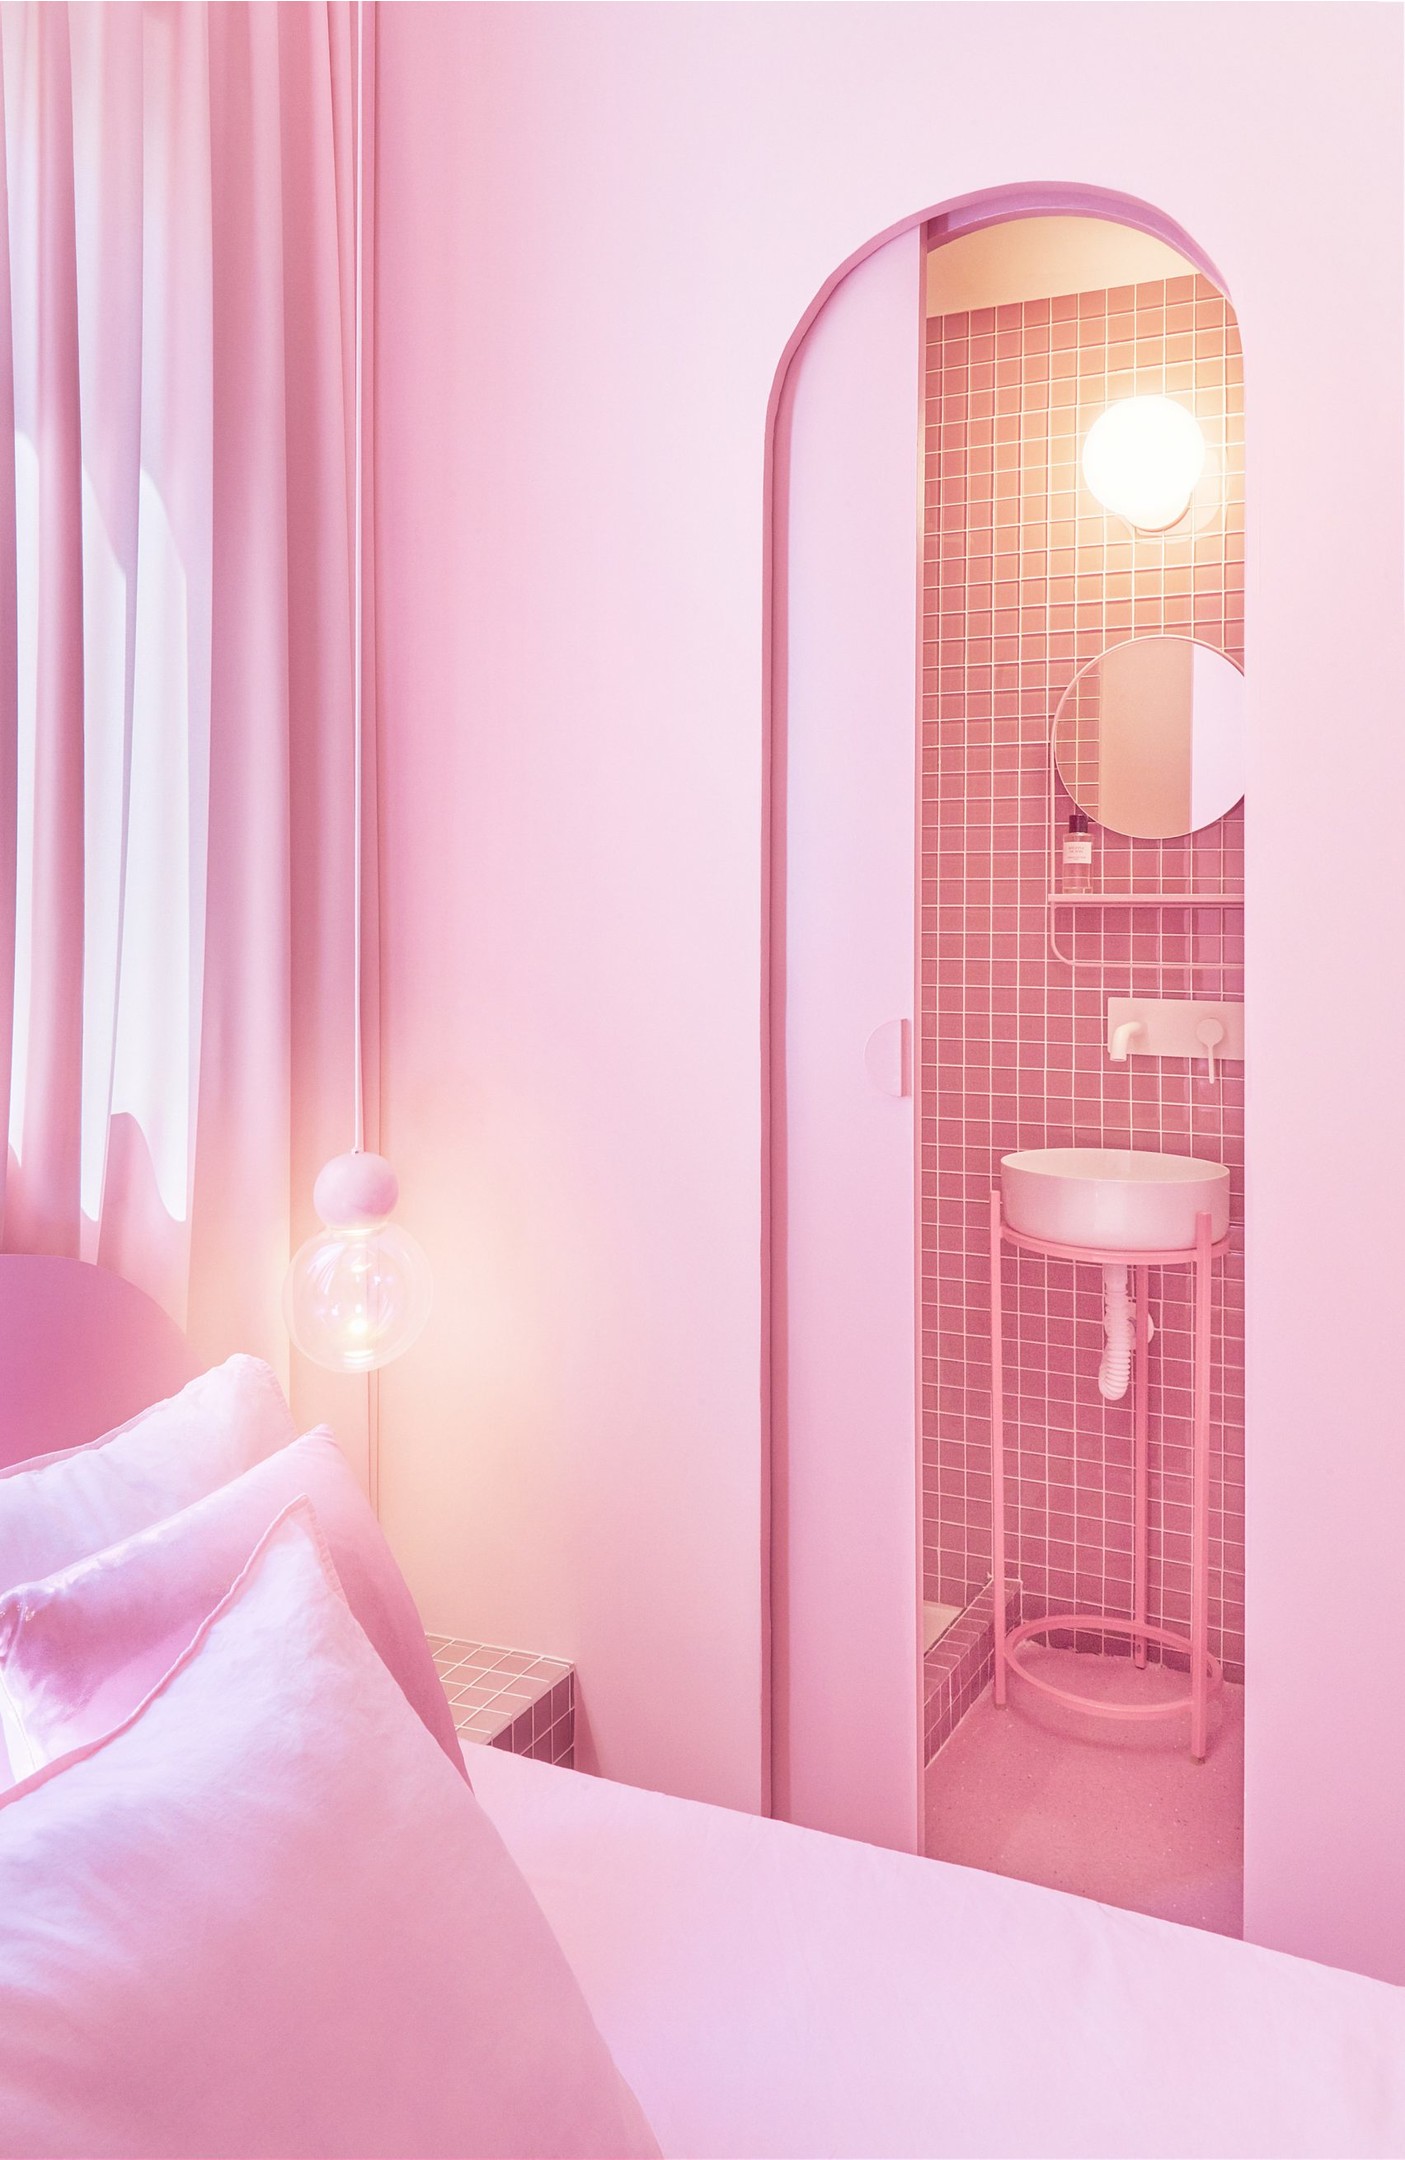 Góc trái của giường ngủ, phía chiếc đèn thả trần là một cánh cửa trượt bí mật. Đằng sau cảnh cửa mềm mại uyển chuyển này là phòng tắm kết hợp nhà vệ sinh ngay trong phòng ngủ nên vô cùng tiện lợi cho sinh hoạt của chủ nhân.